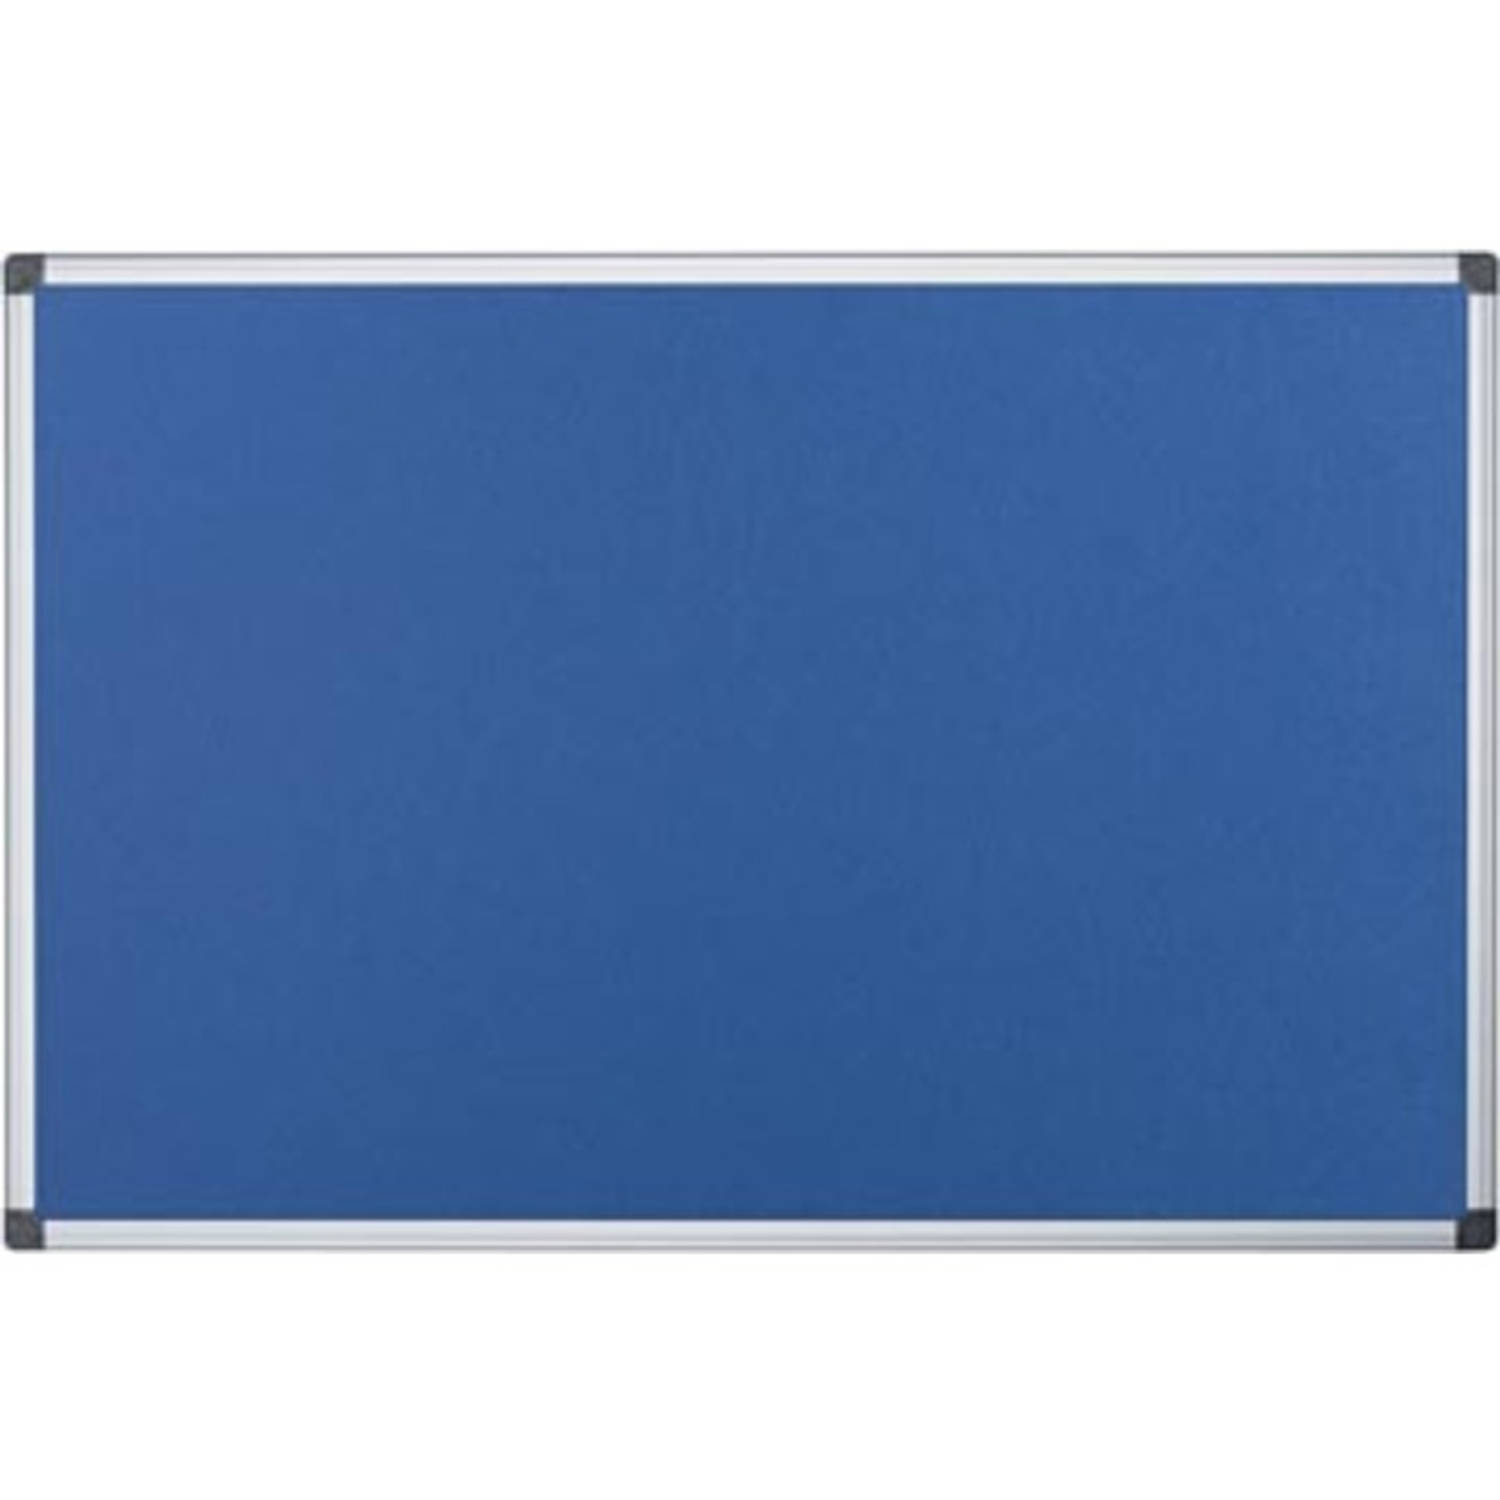 Pergamy Textielbord Met Aluminium Frame Ft 60 X 90 Cm, - Blauw